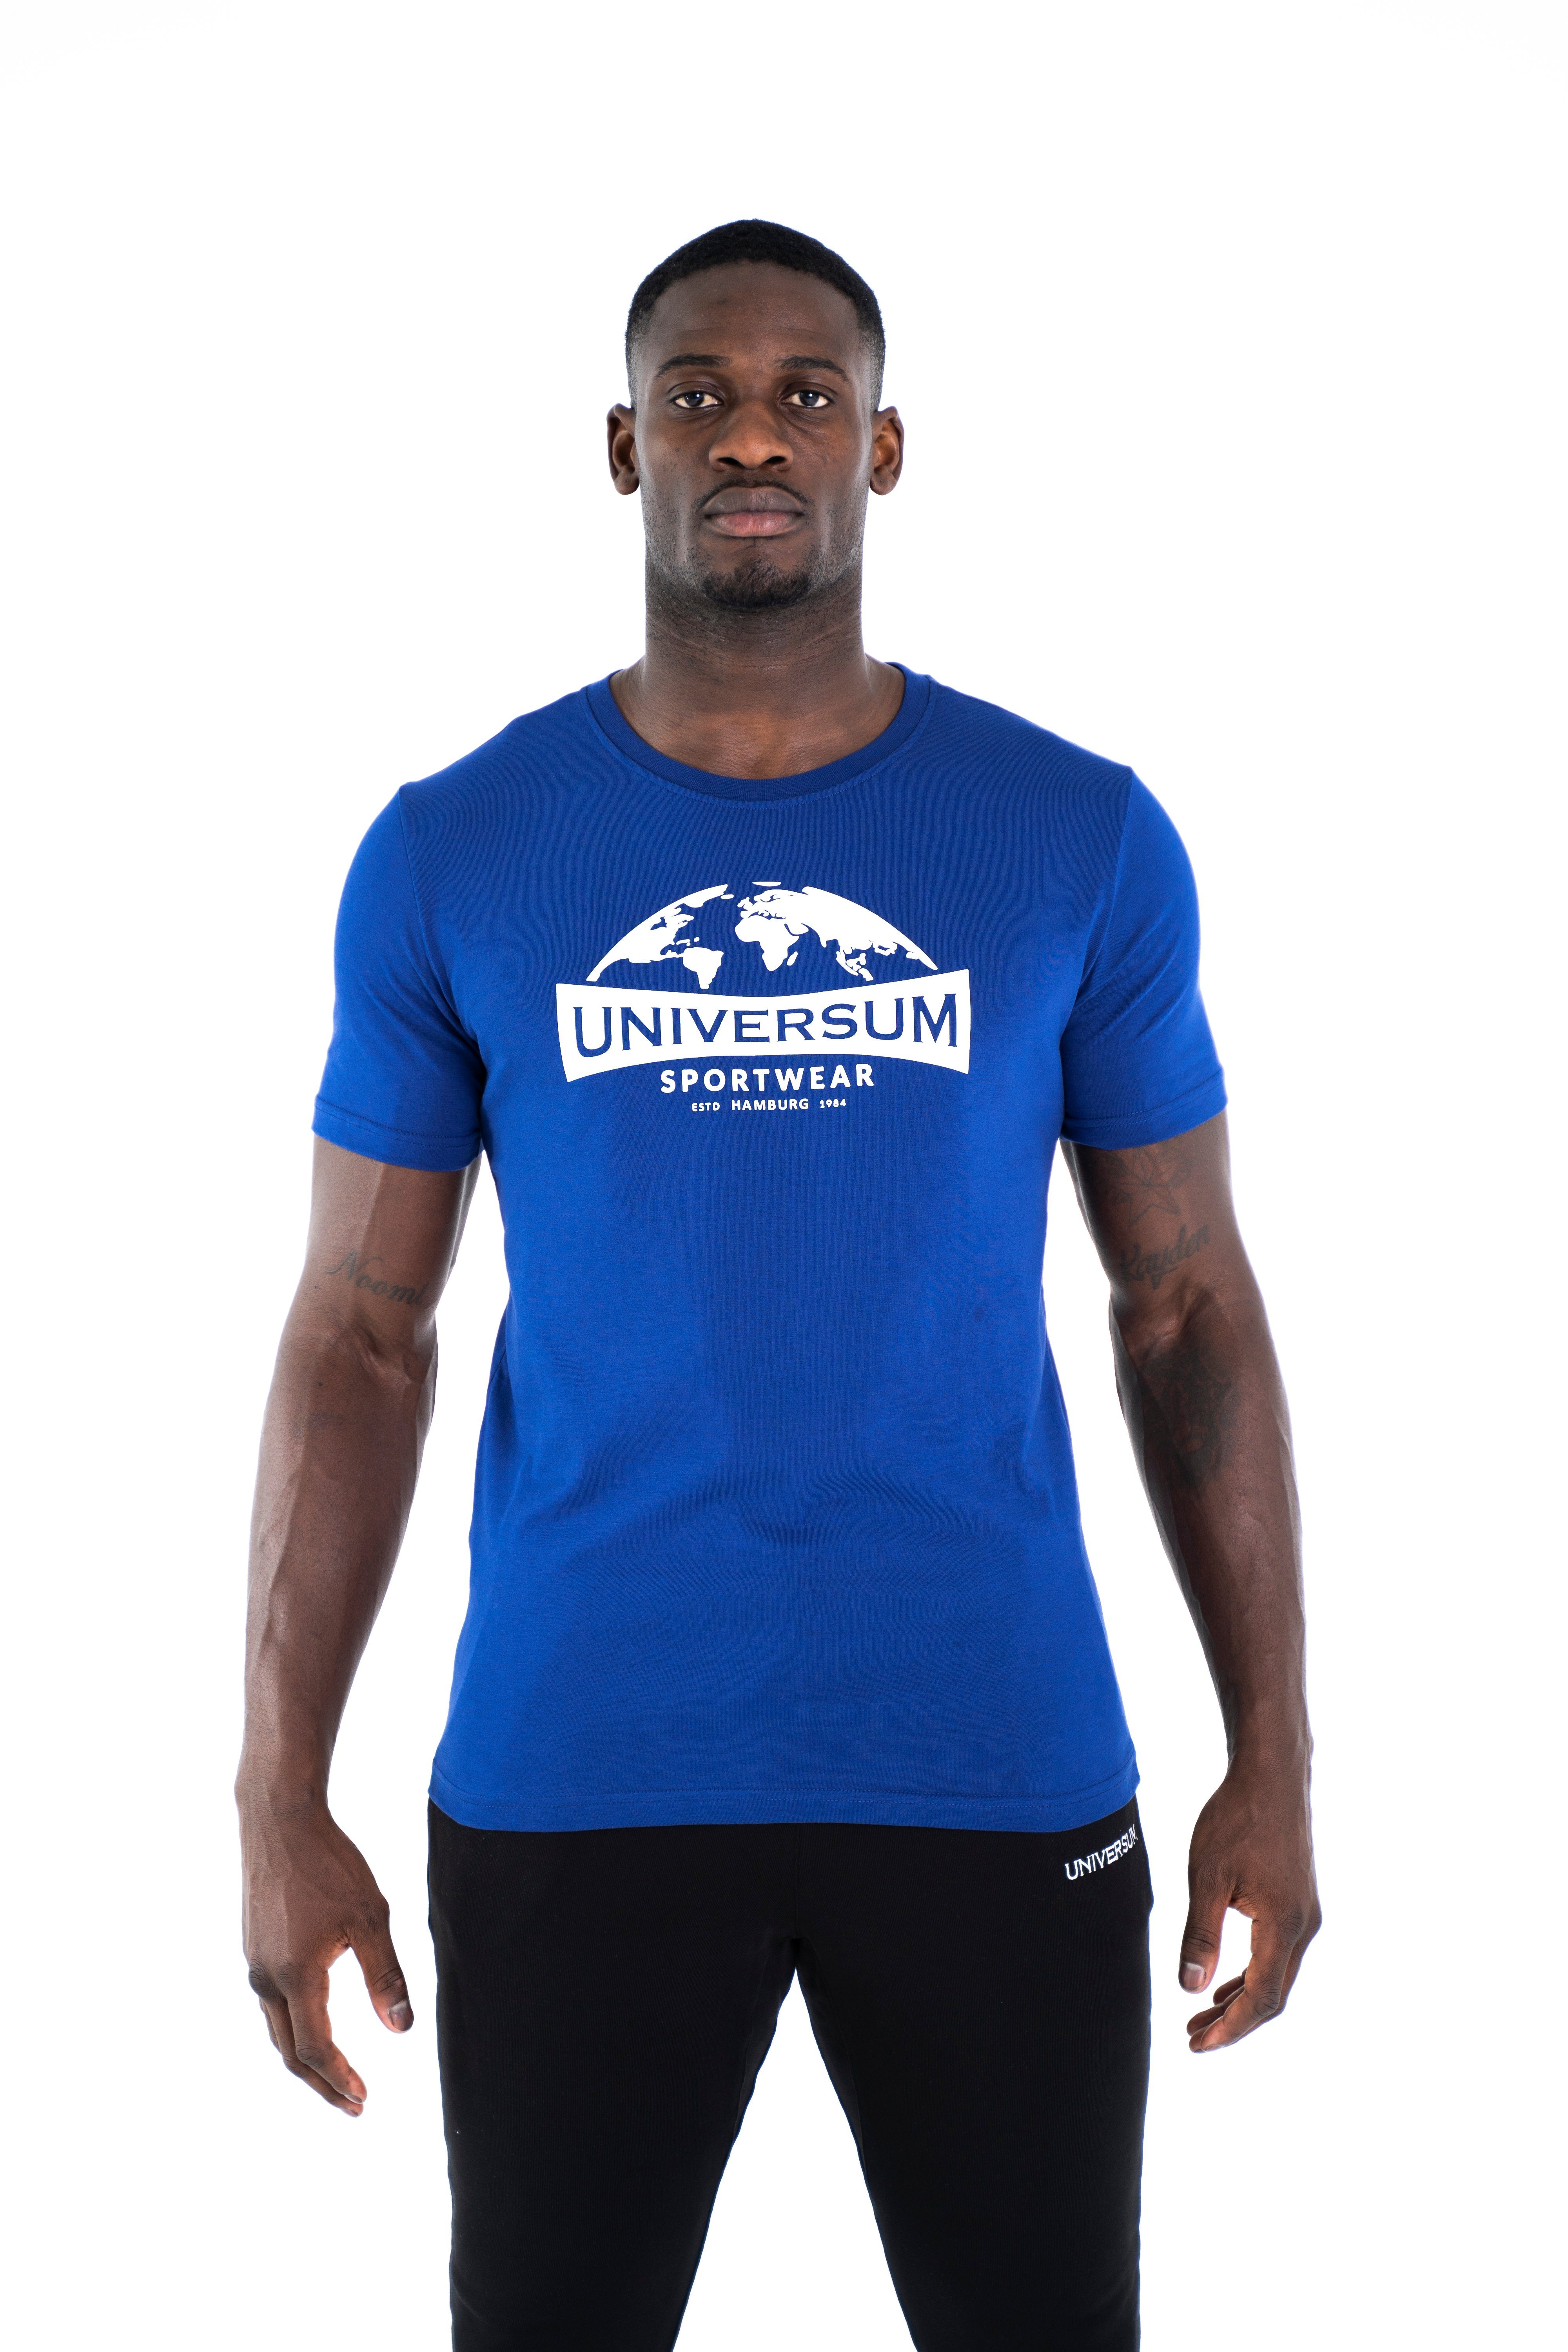 T-Shirt Modern C-Neck Cotton Rundhalsausschnitt, 100% Baumwoll Shirt Universum Sportwear blau